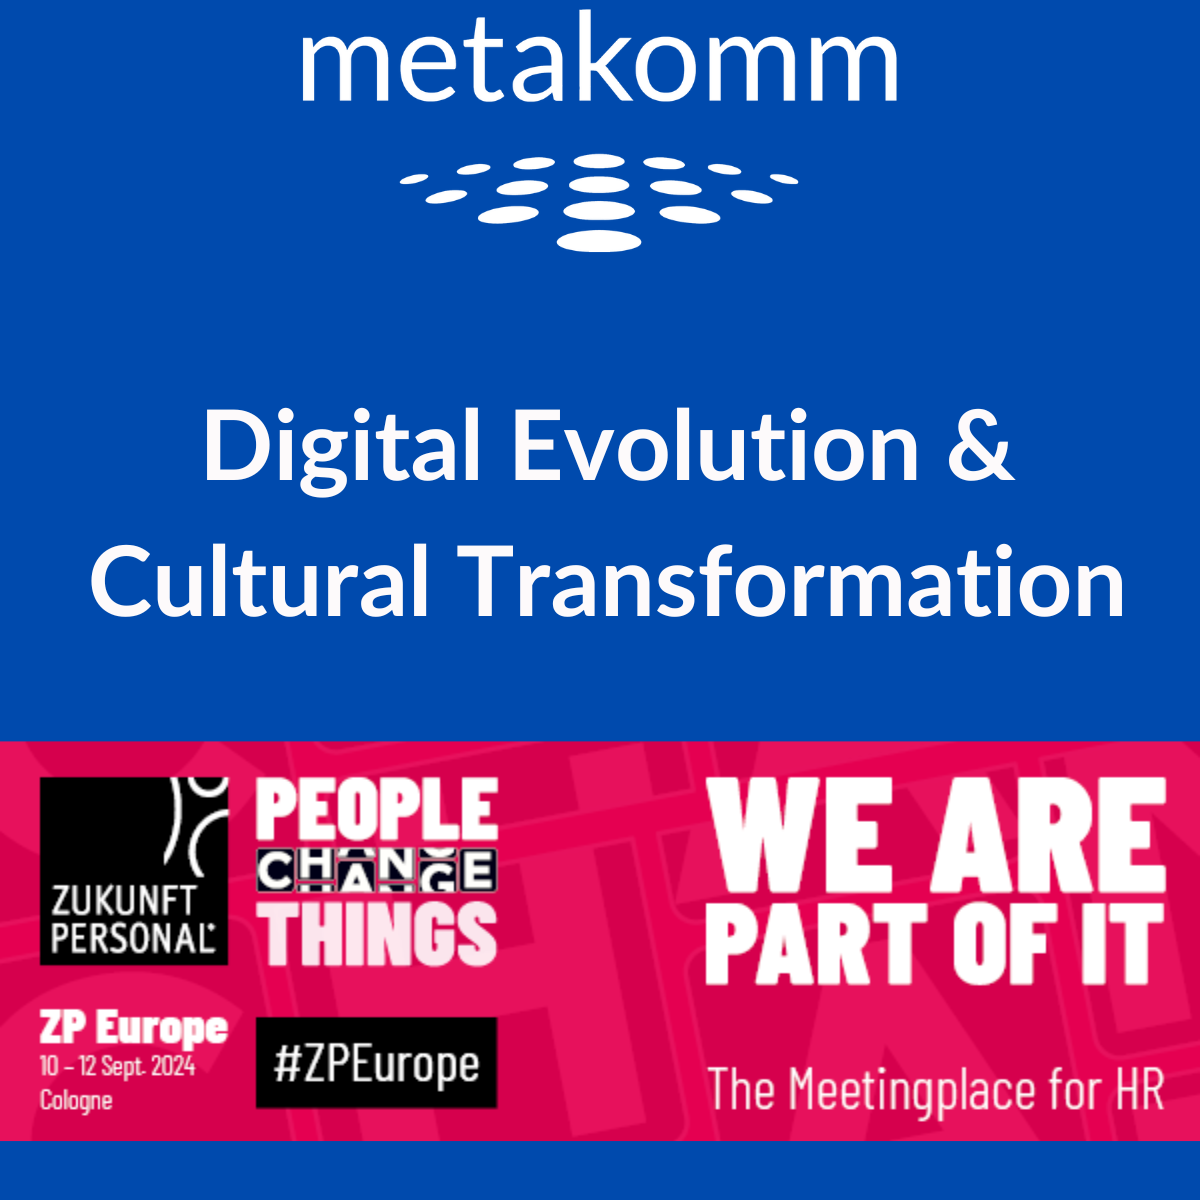 Metakomm ist Aussteller auf der Zukunft Personale 2024 in Köln